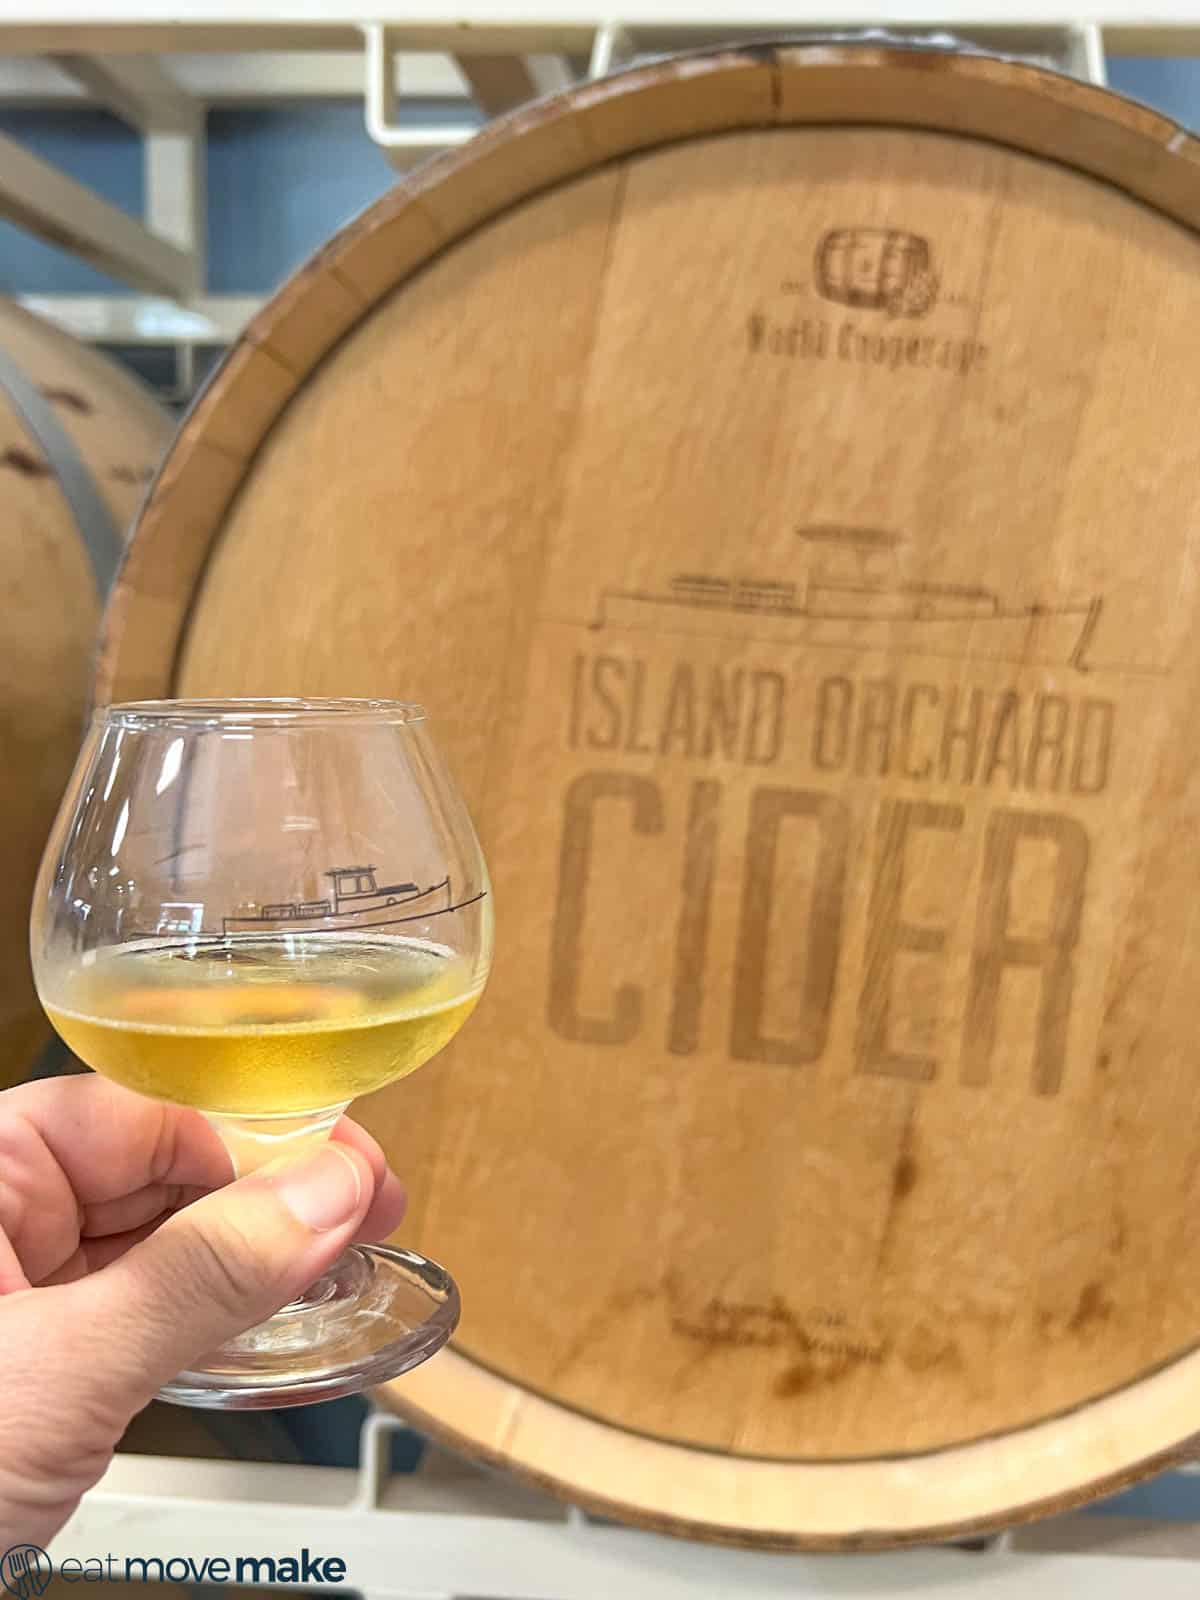 hand holding glass of hard cider by cider barrel